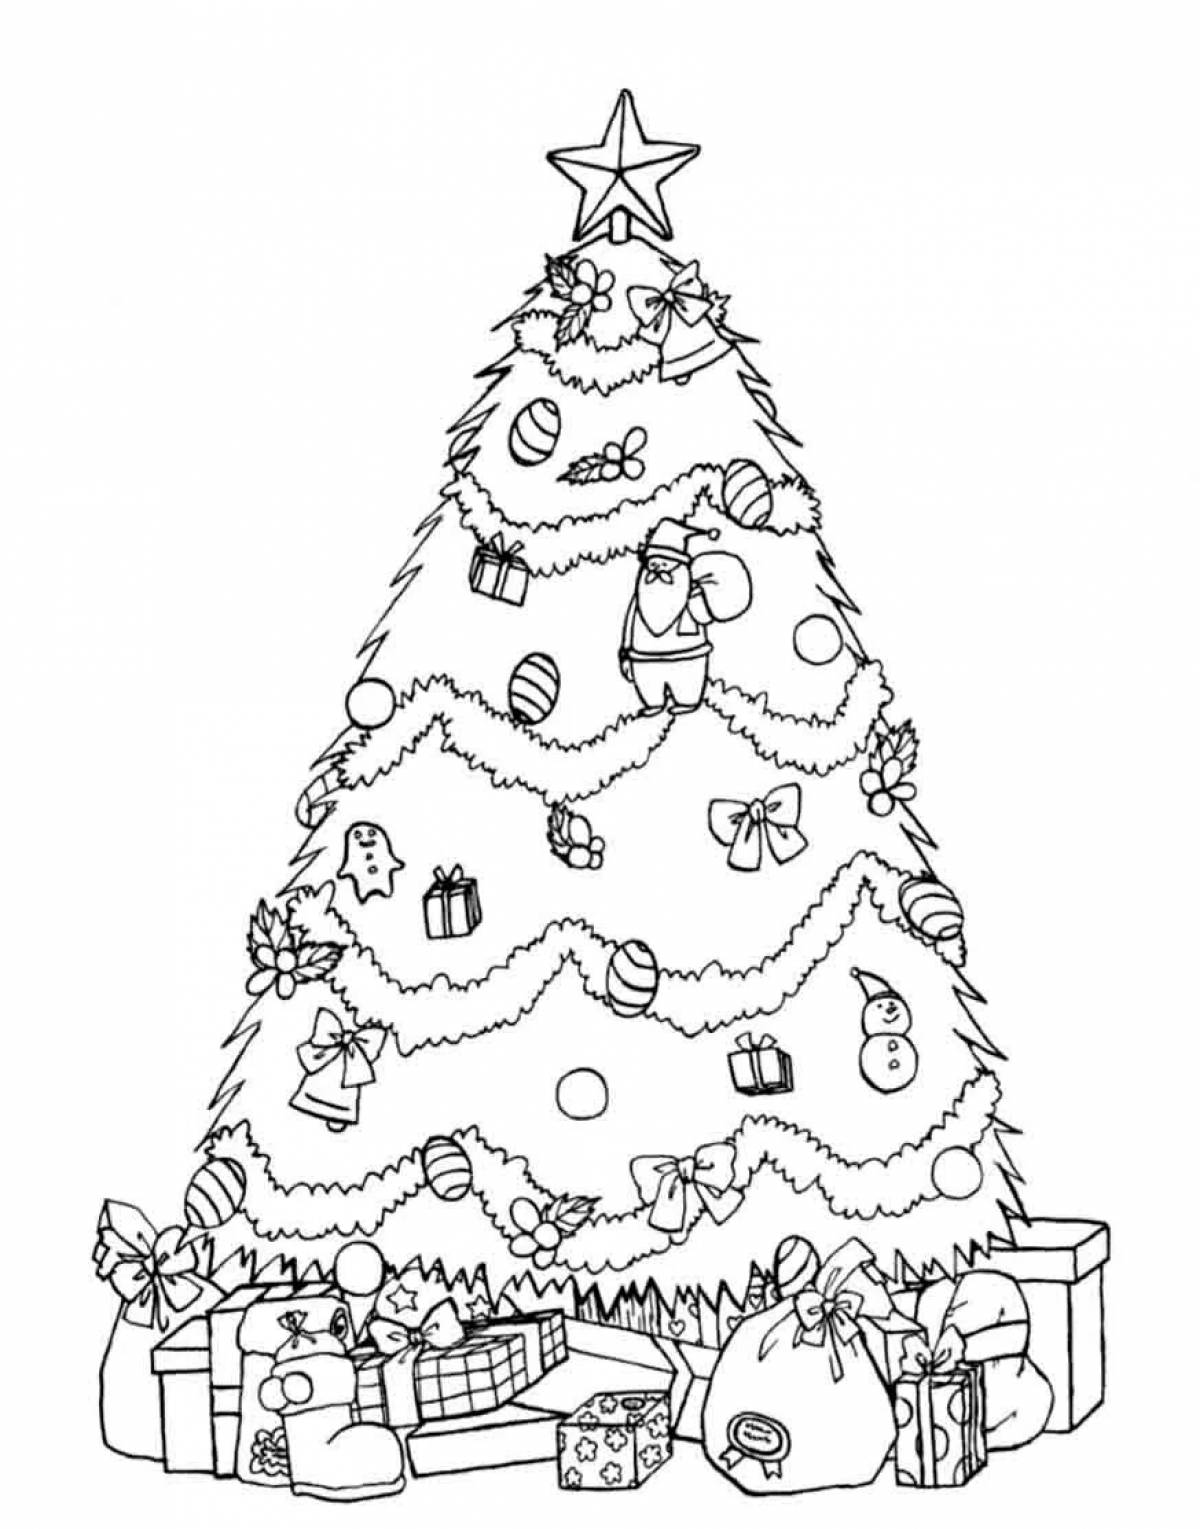 Christmas tree drawing #3